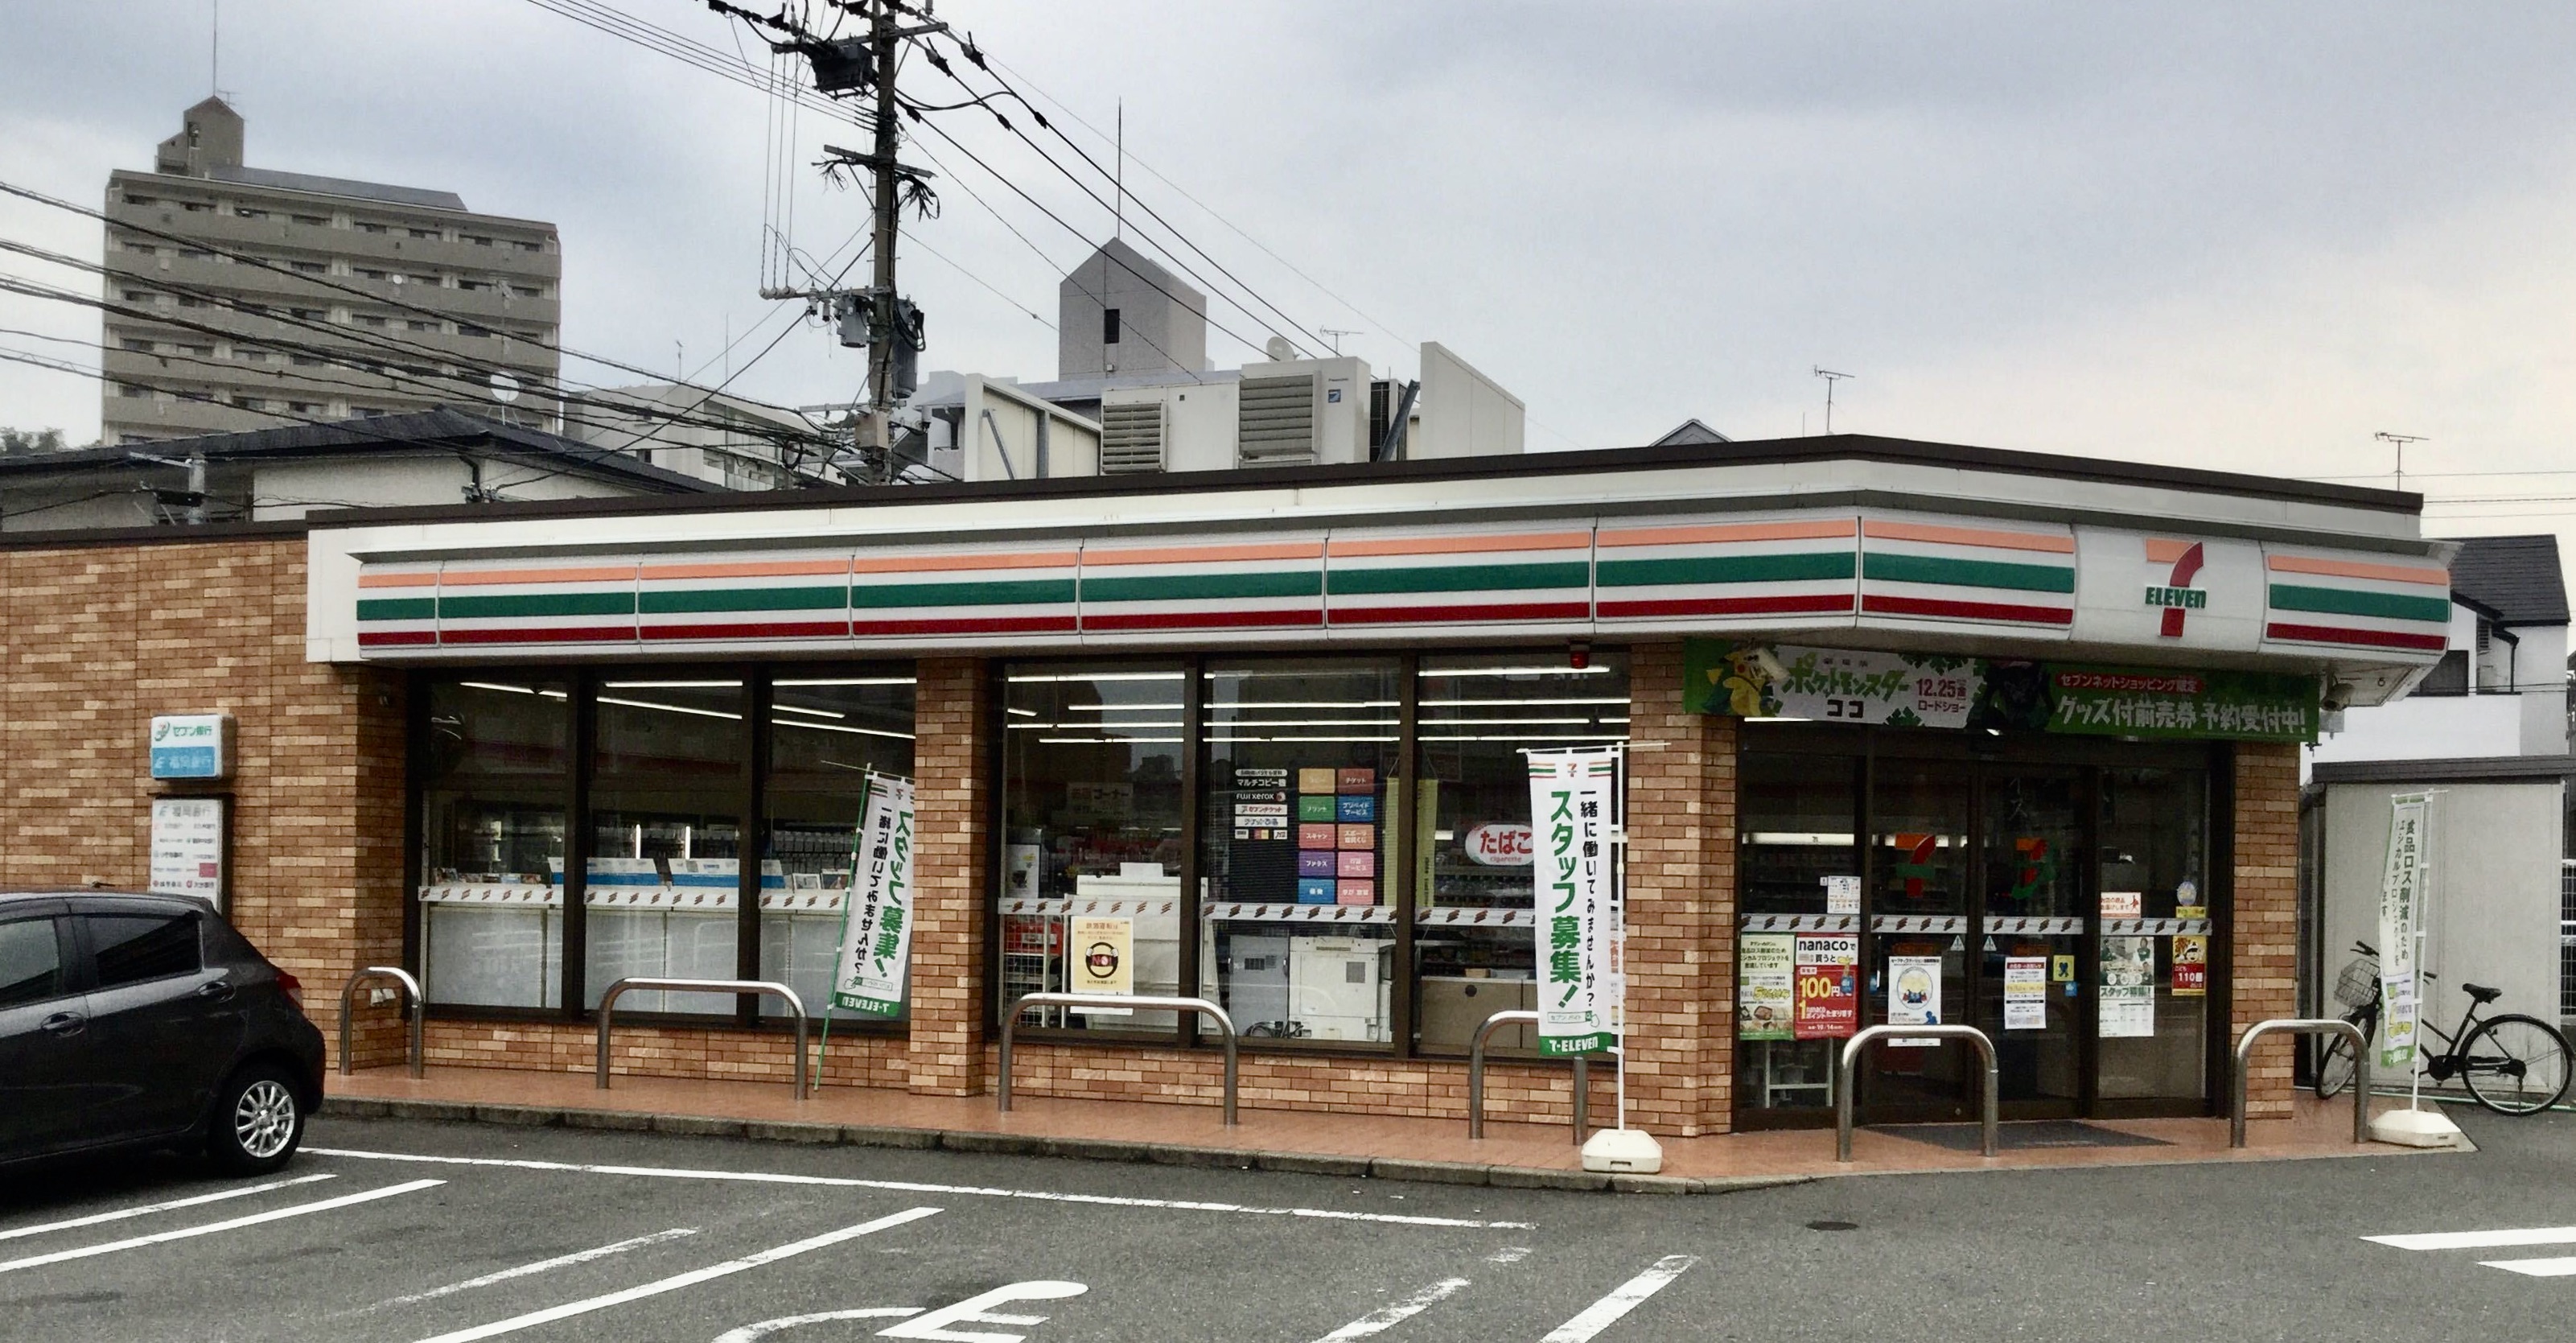 セブンイレブン福岡愛宕1丁目店 Charichari(チャリチャリ) image